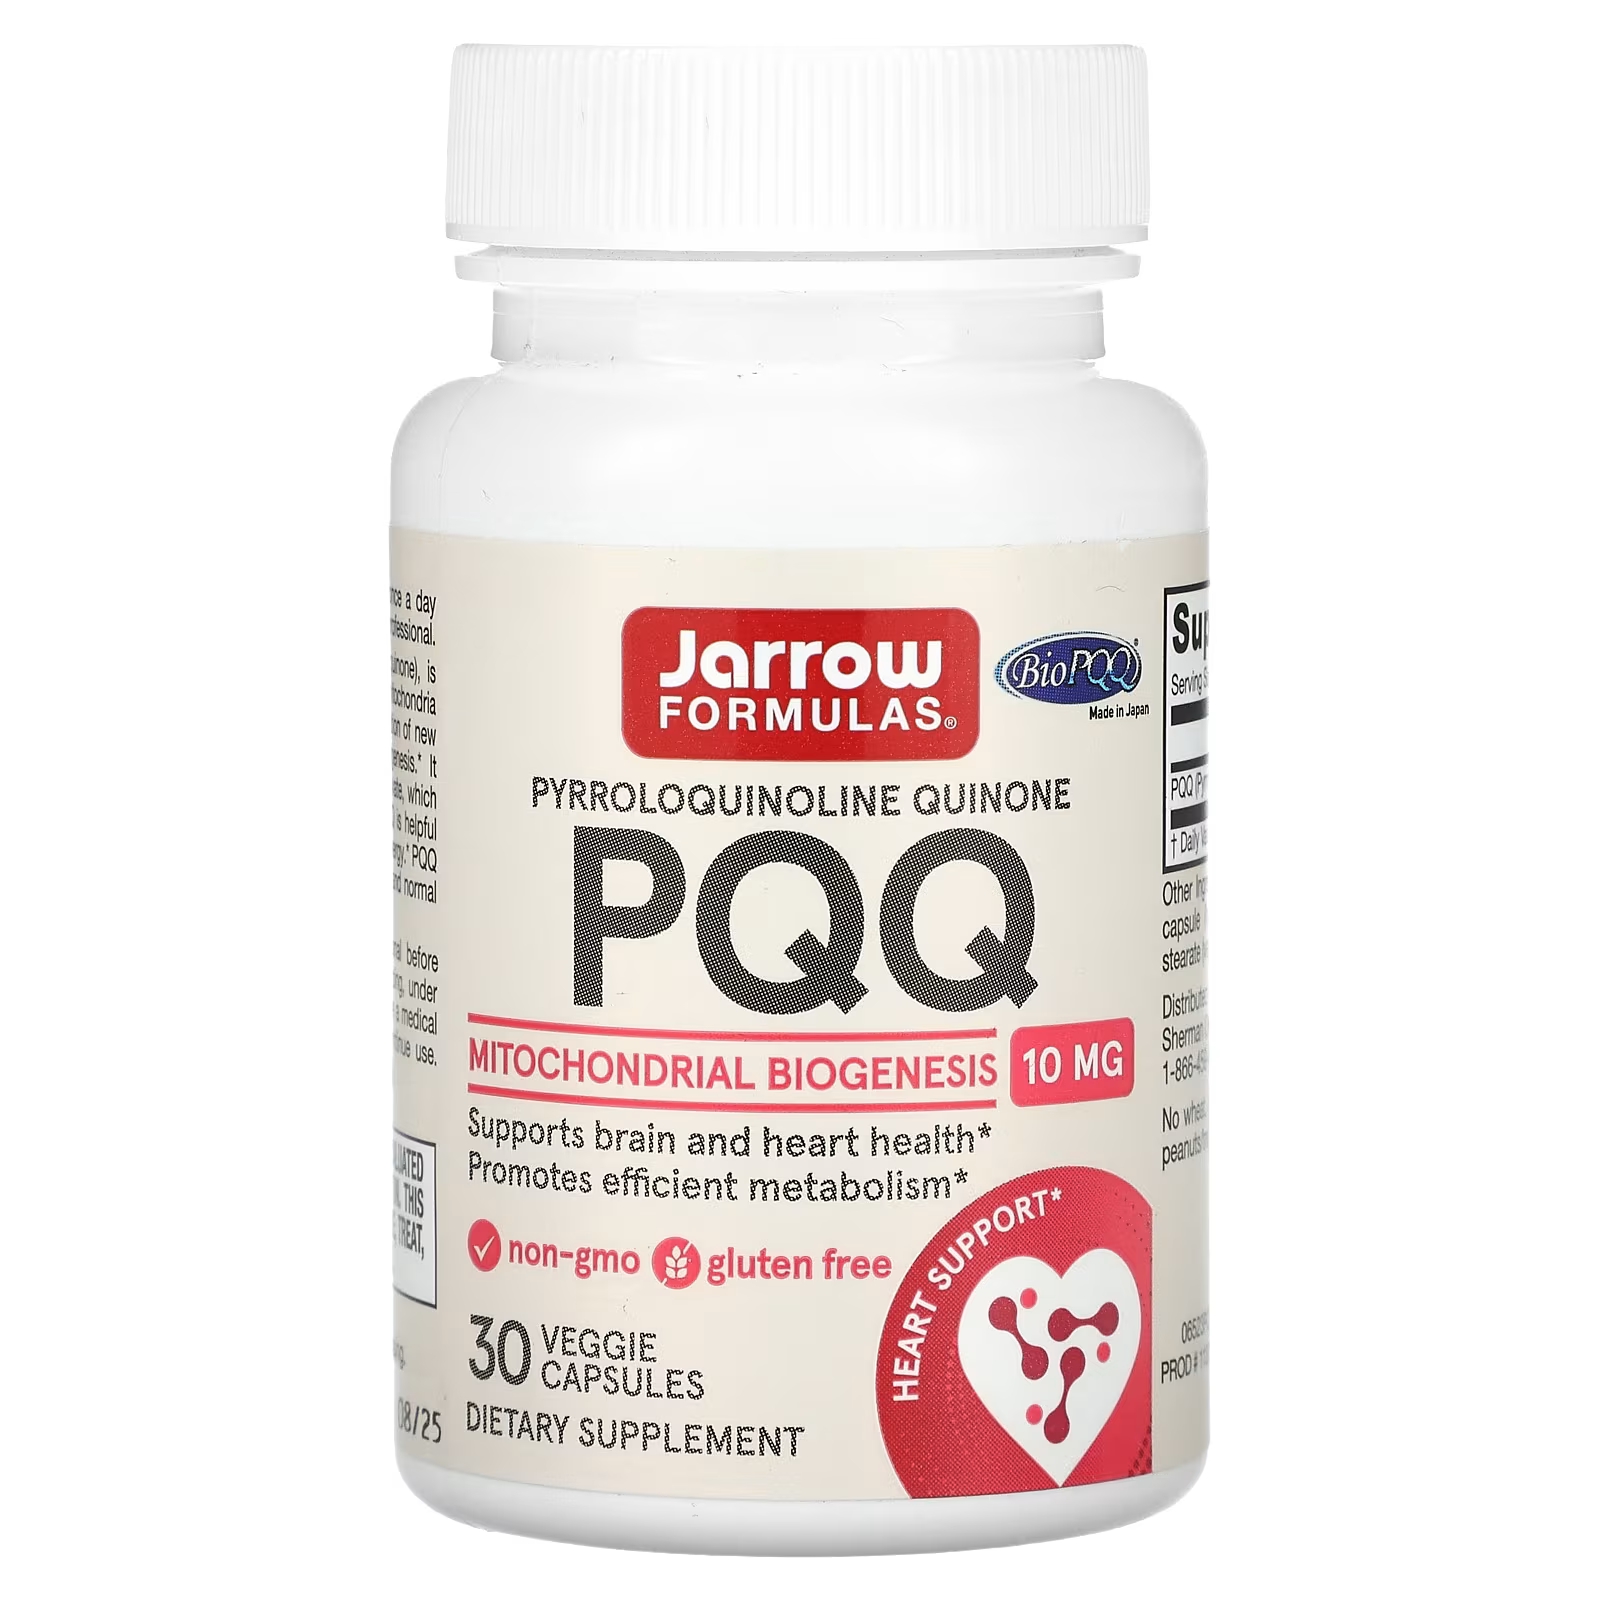 Пищевая добавка Jarrow Formulas PQQ для здоровья сердца, 10 мг цена и фото